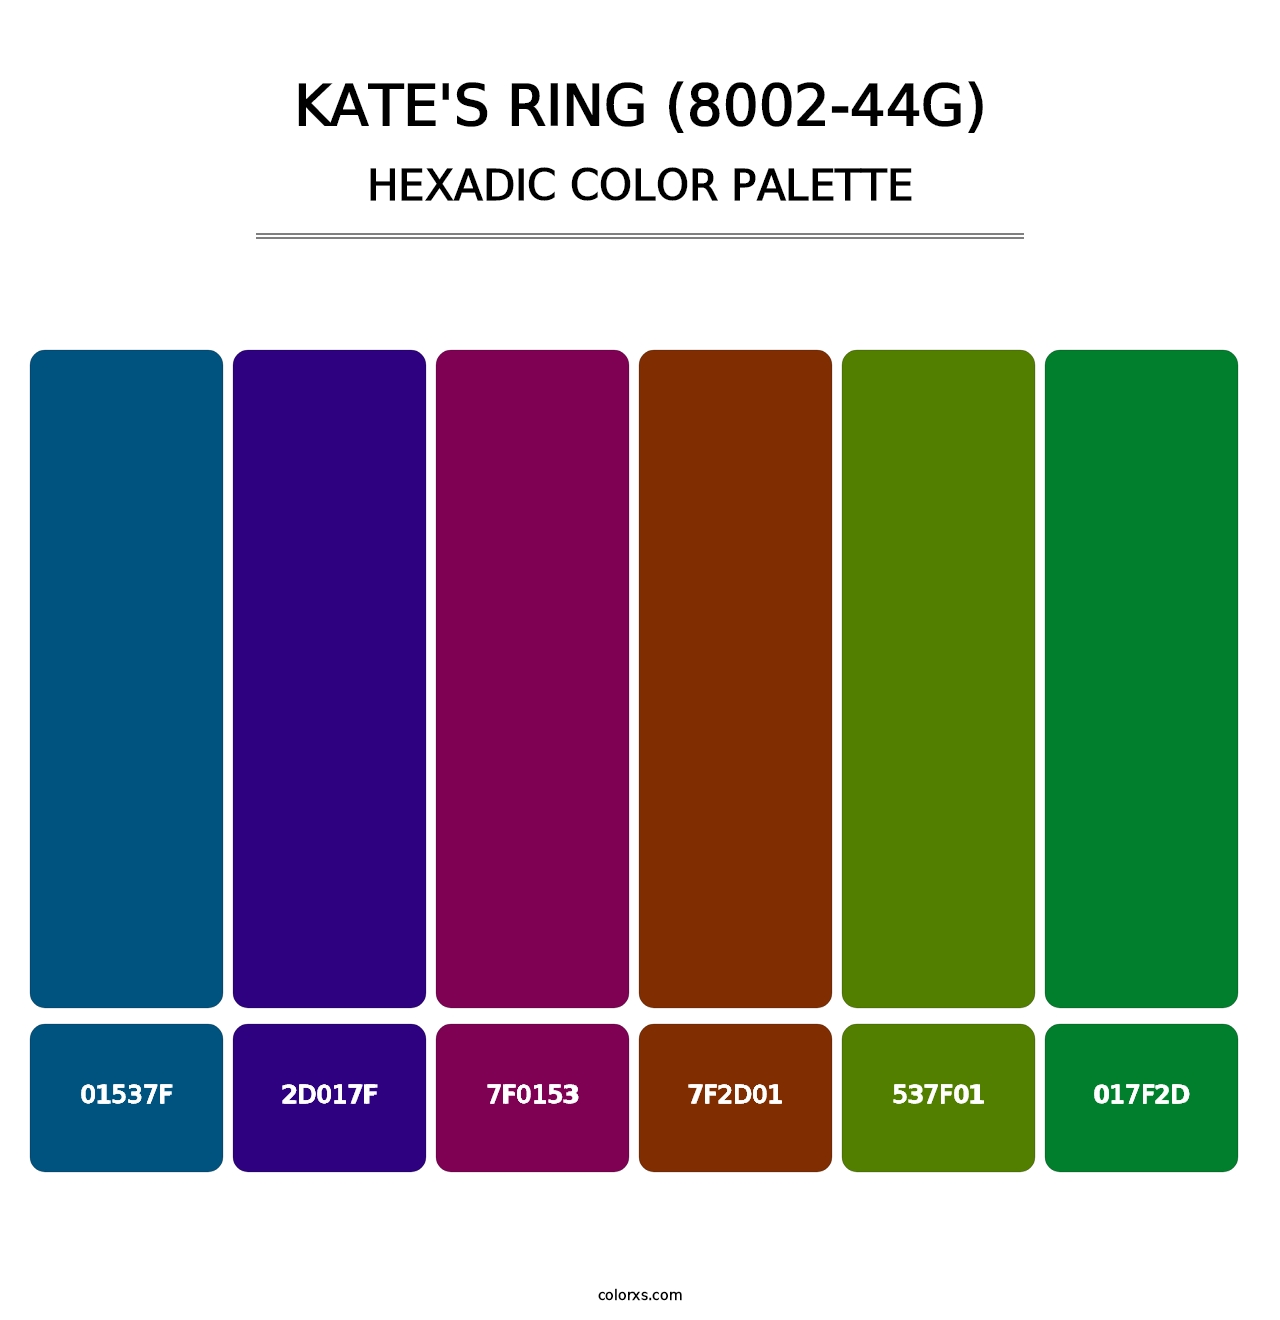 Kate's Ring (8002-44G) - Hexadic Color Palette